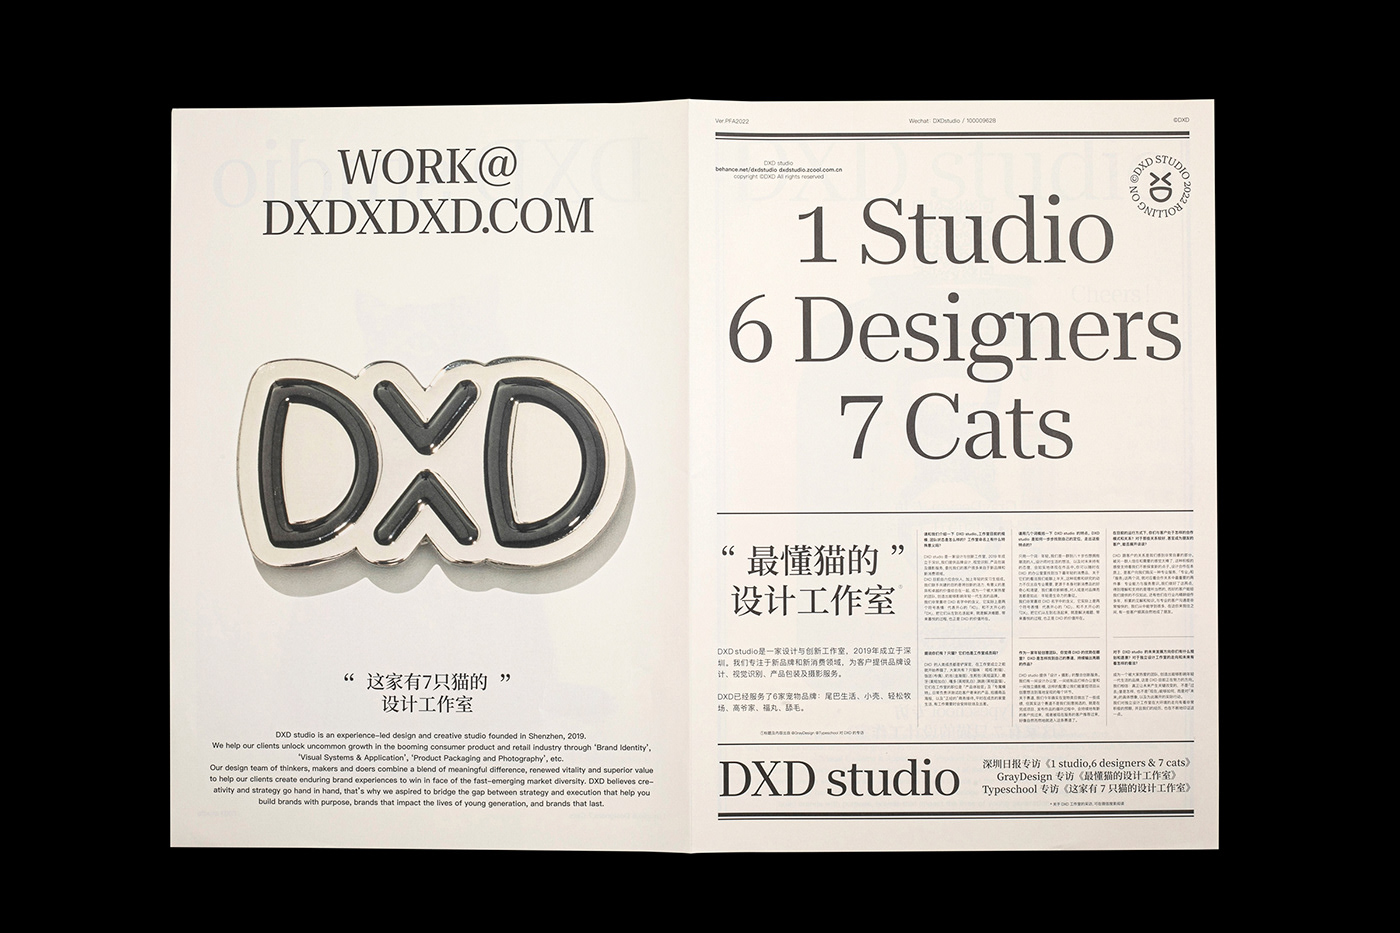 Brand Design brand identity identidade visual identity Logo Design marketing   text typography   visual identity